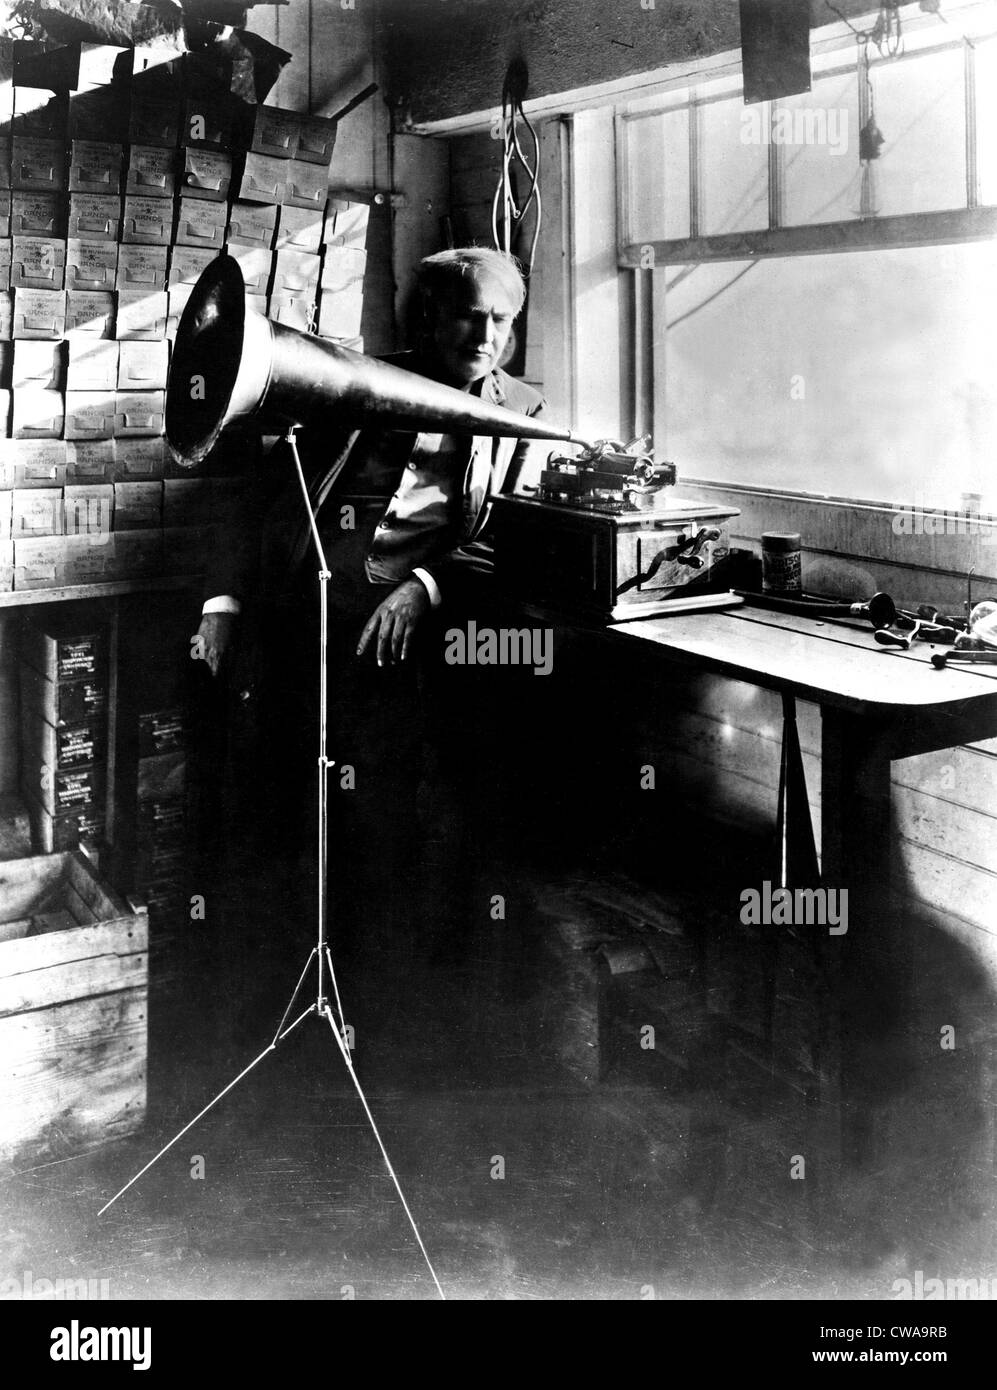 Thomas Edison mit seiner neuen Erfindung des Phonographen. Undatiertes Foto... Höflichkeit: CSU Archive / Everett Collection Stockfoto